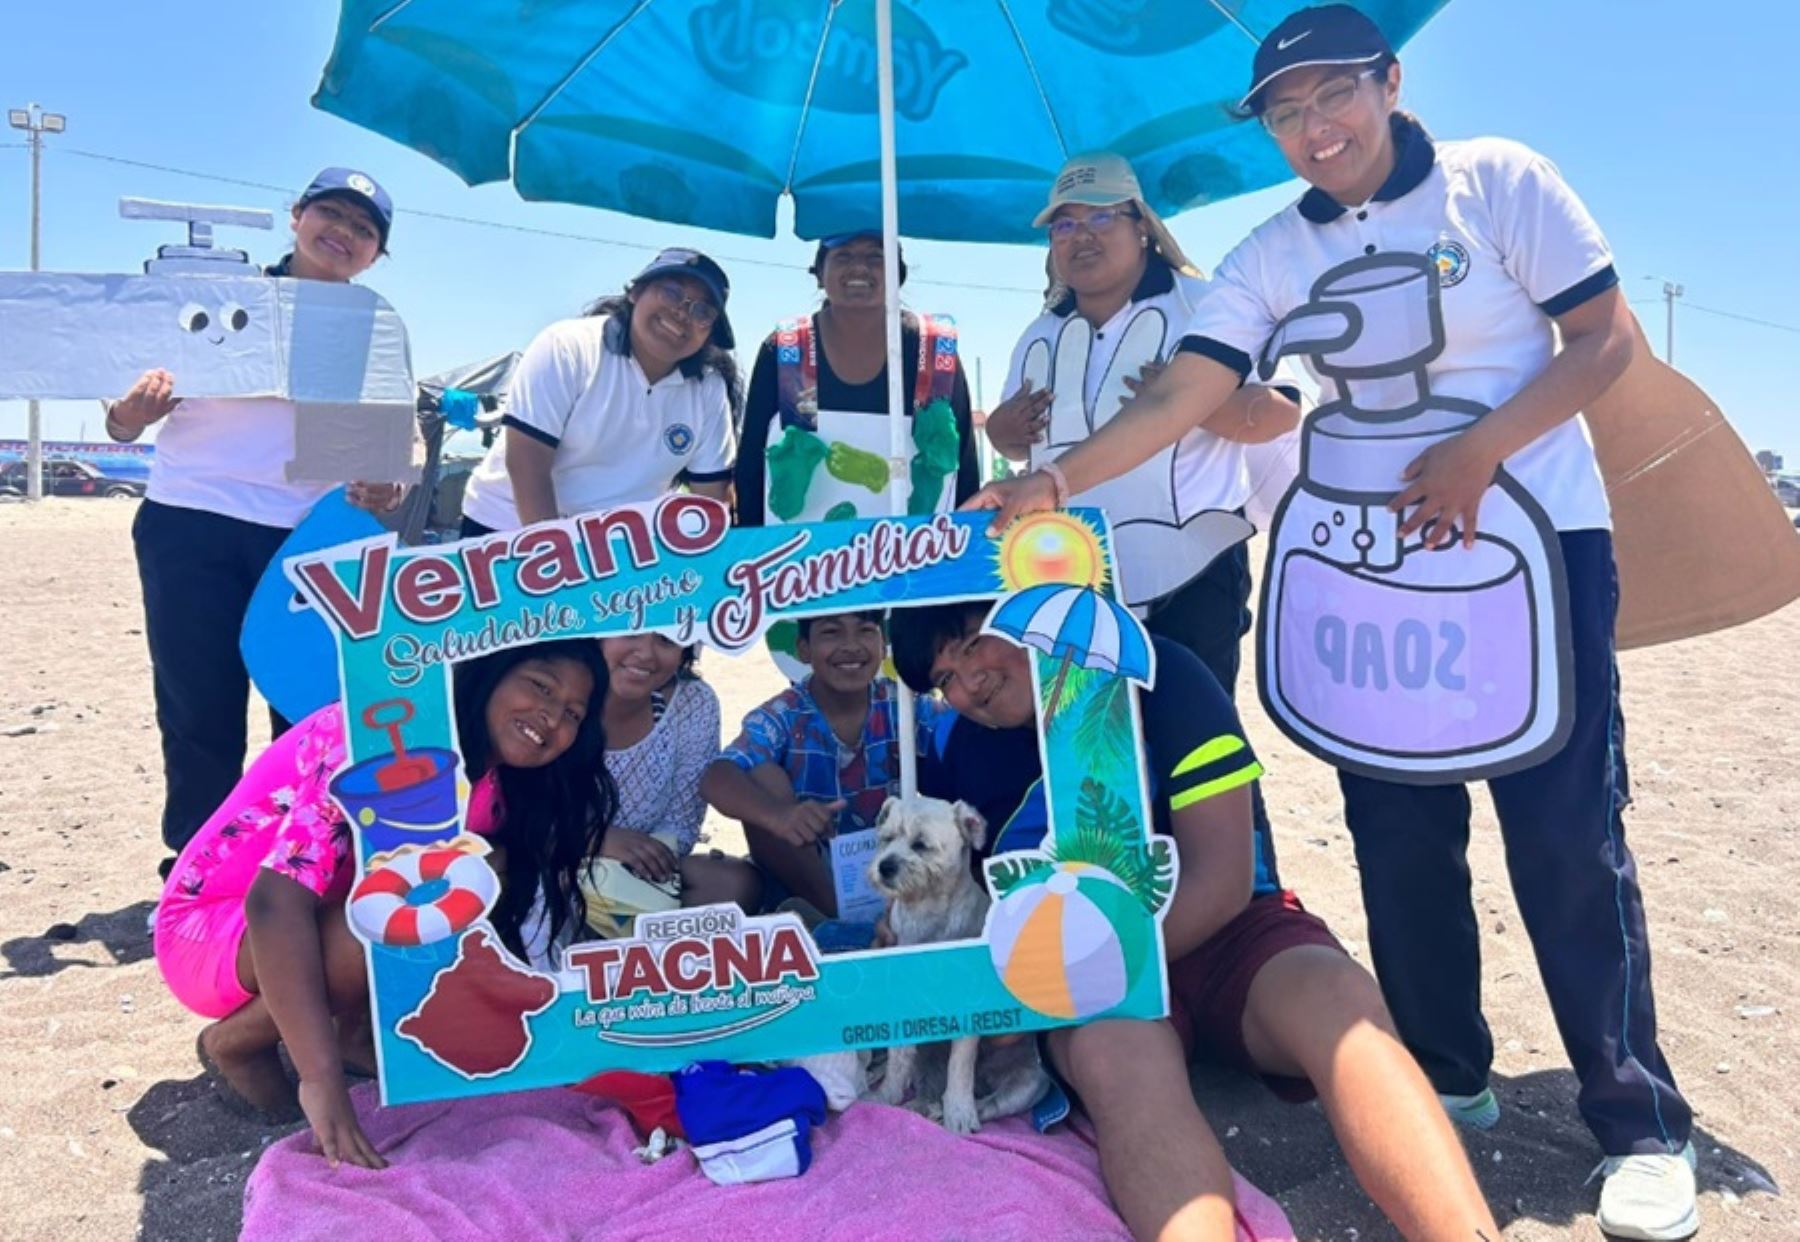 Tacna: Lanzan campaña “Verano saludable” en playas de la región